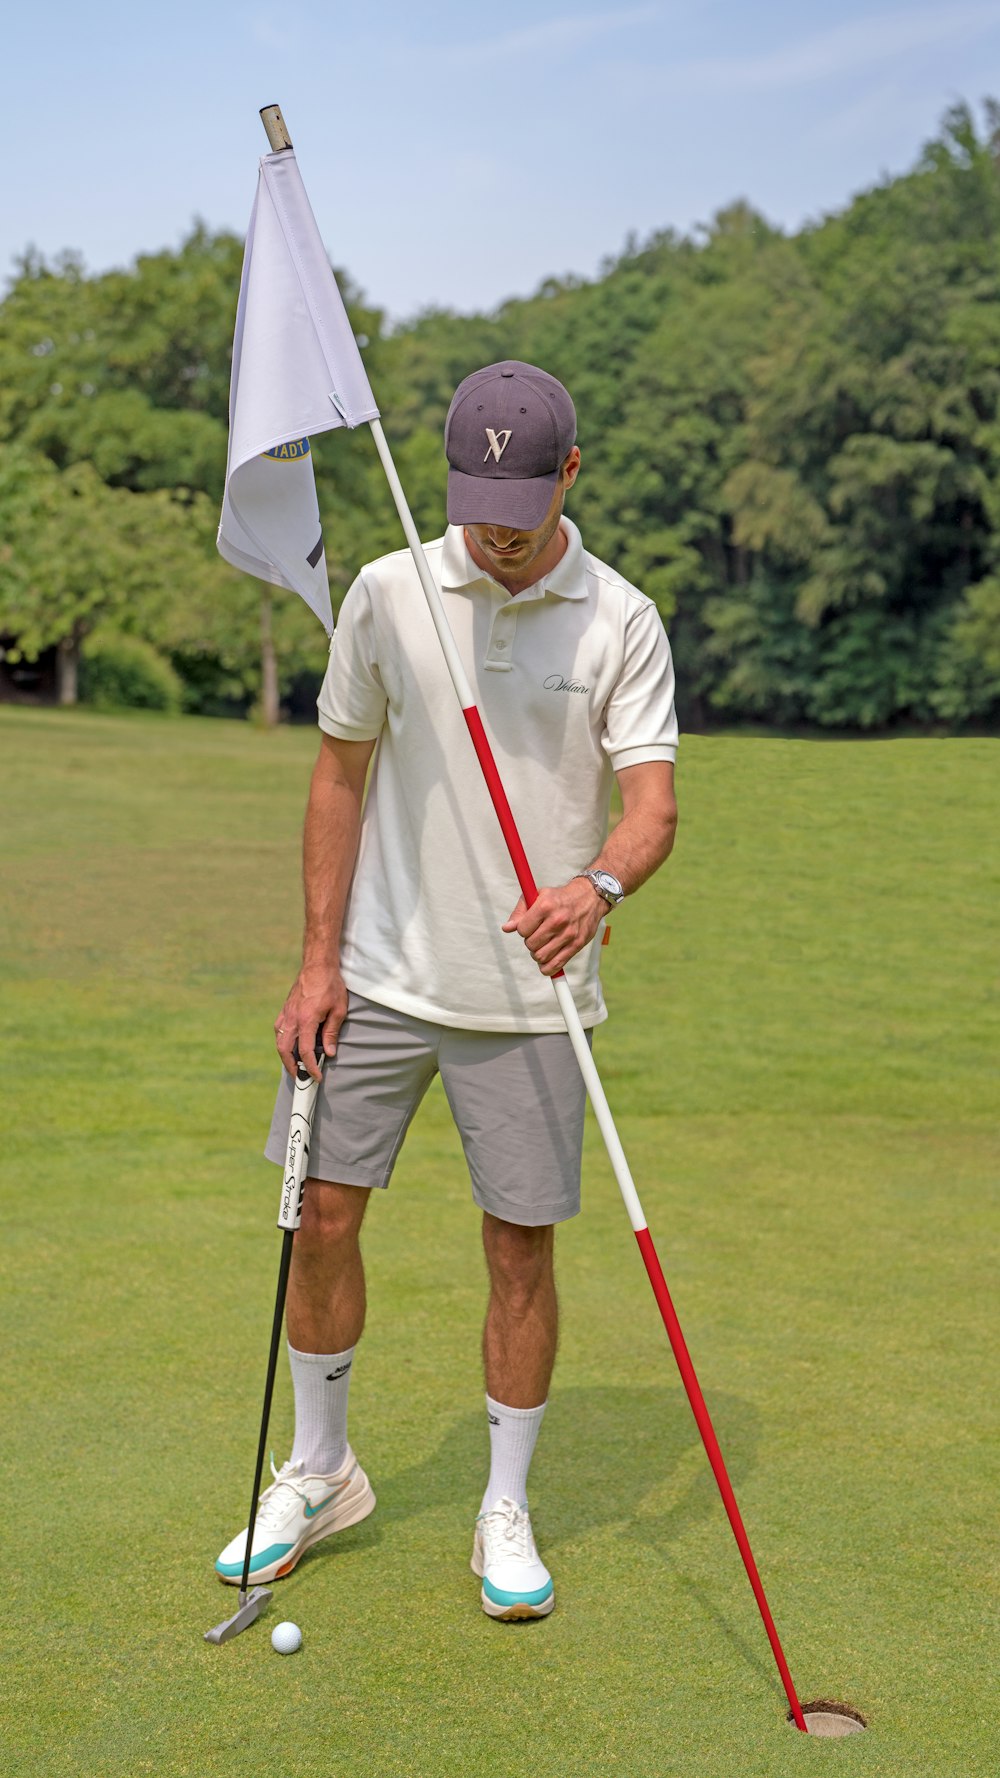 ゴルフクラブと旗を持つ男